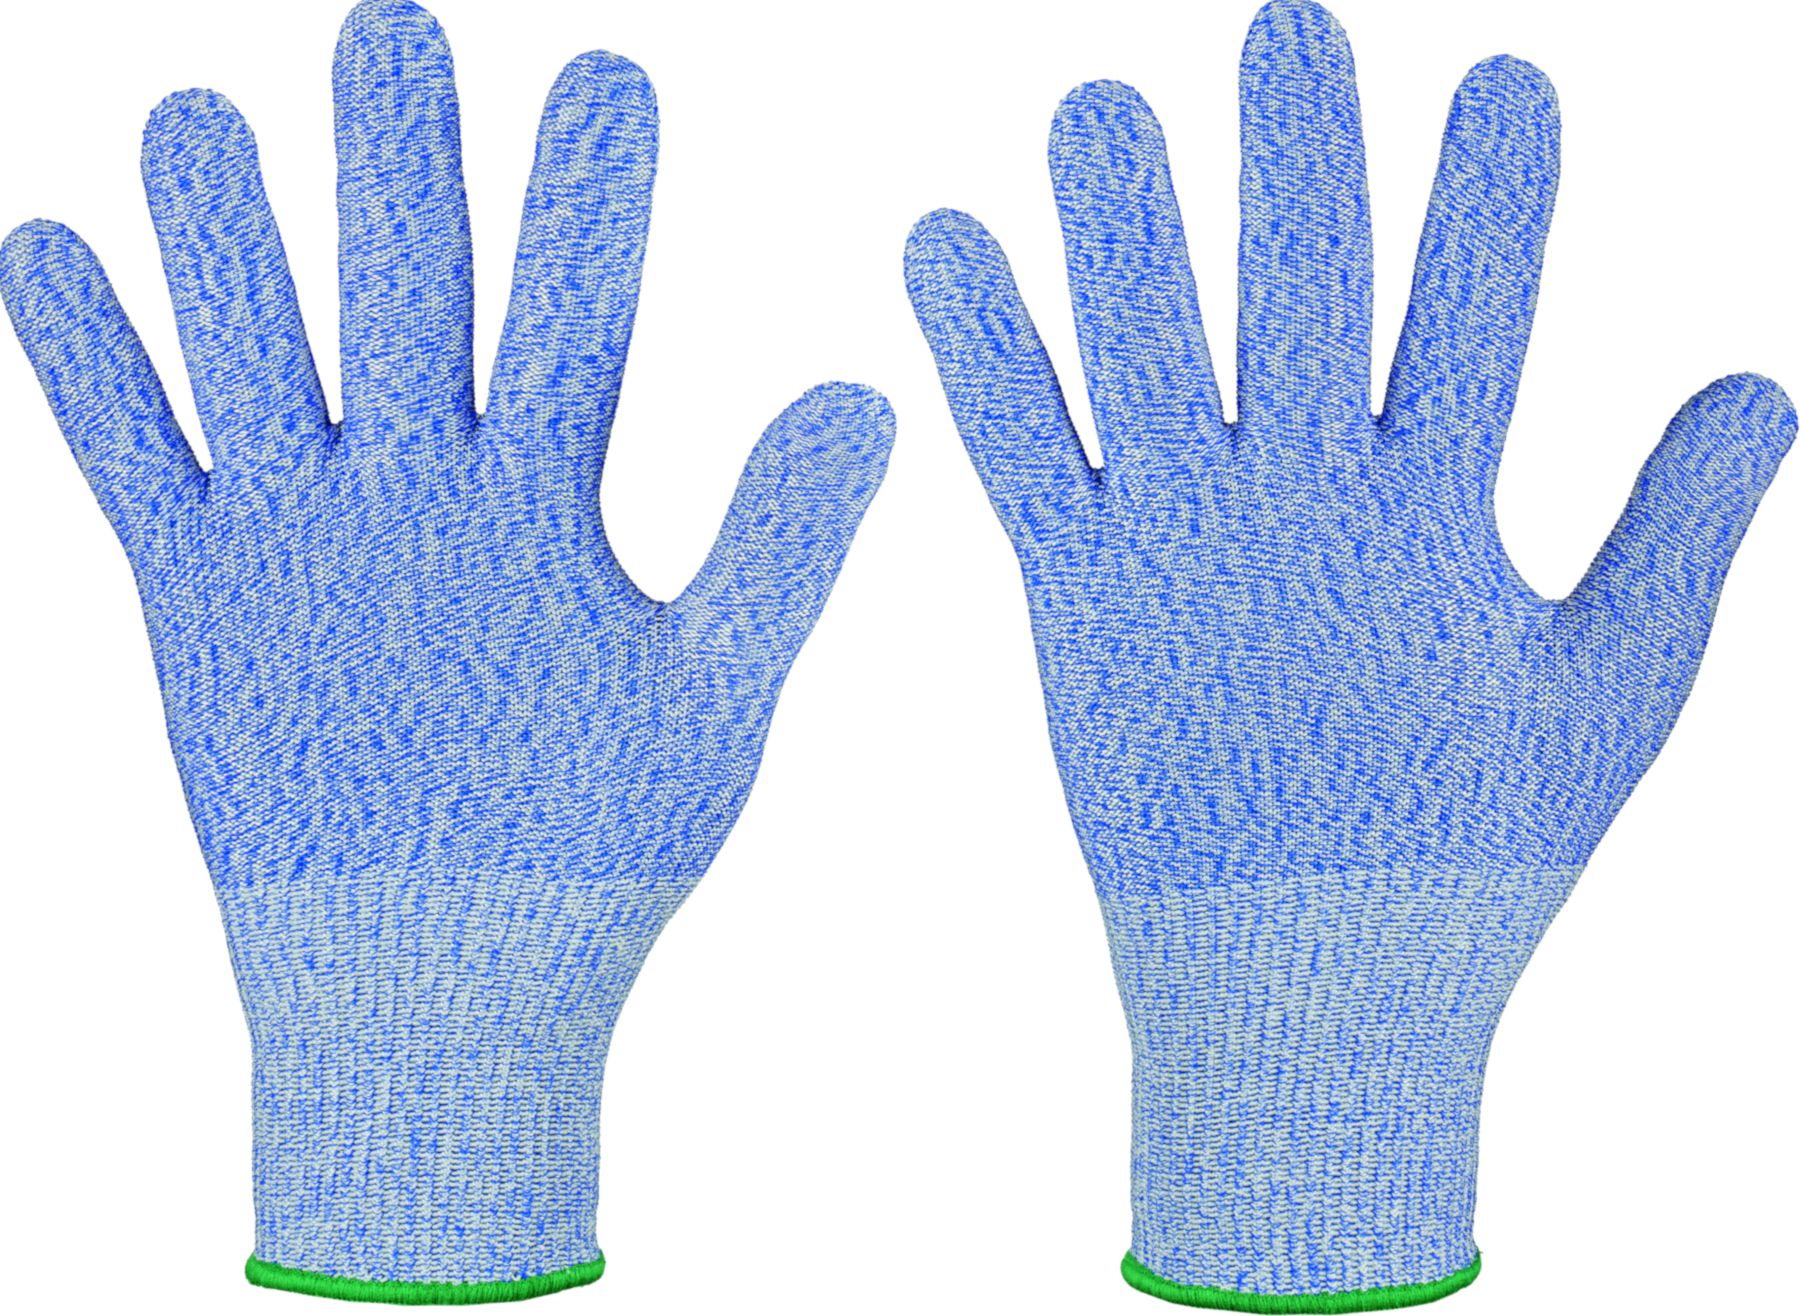 F-SCHNITTSCHUTZ-Feinstrick-Handschuh, *DEERING*, NAHTLOS, VE: 120, blau meliert